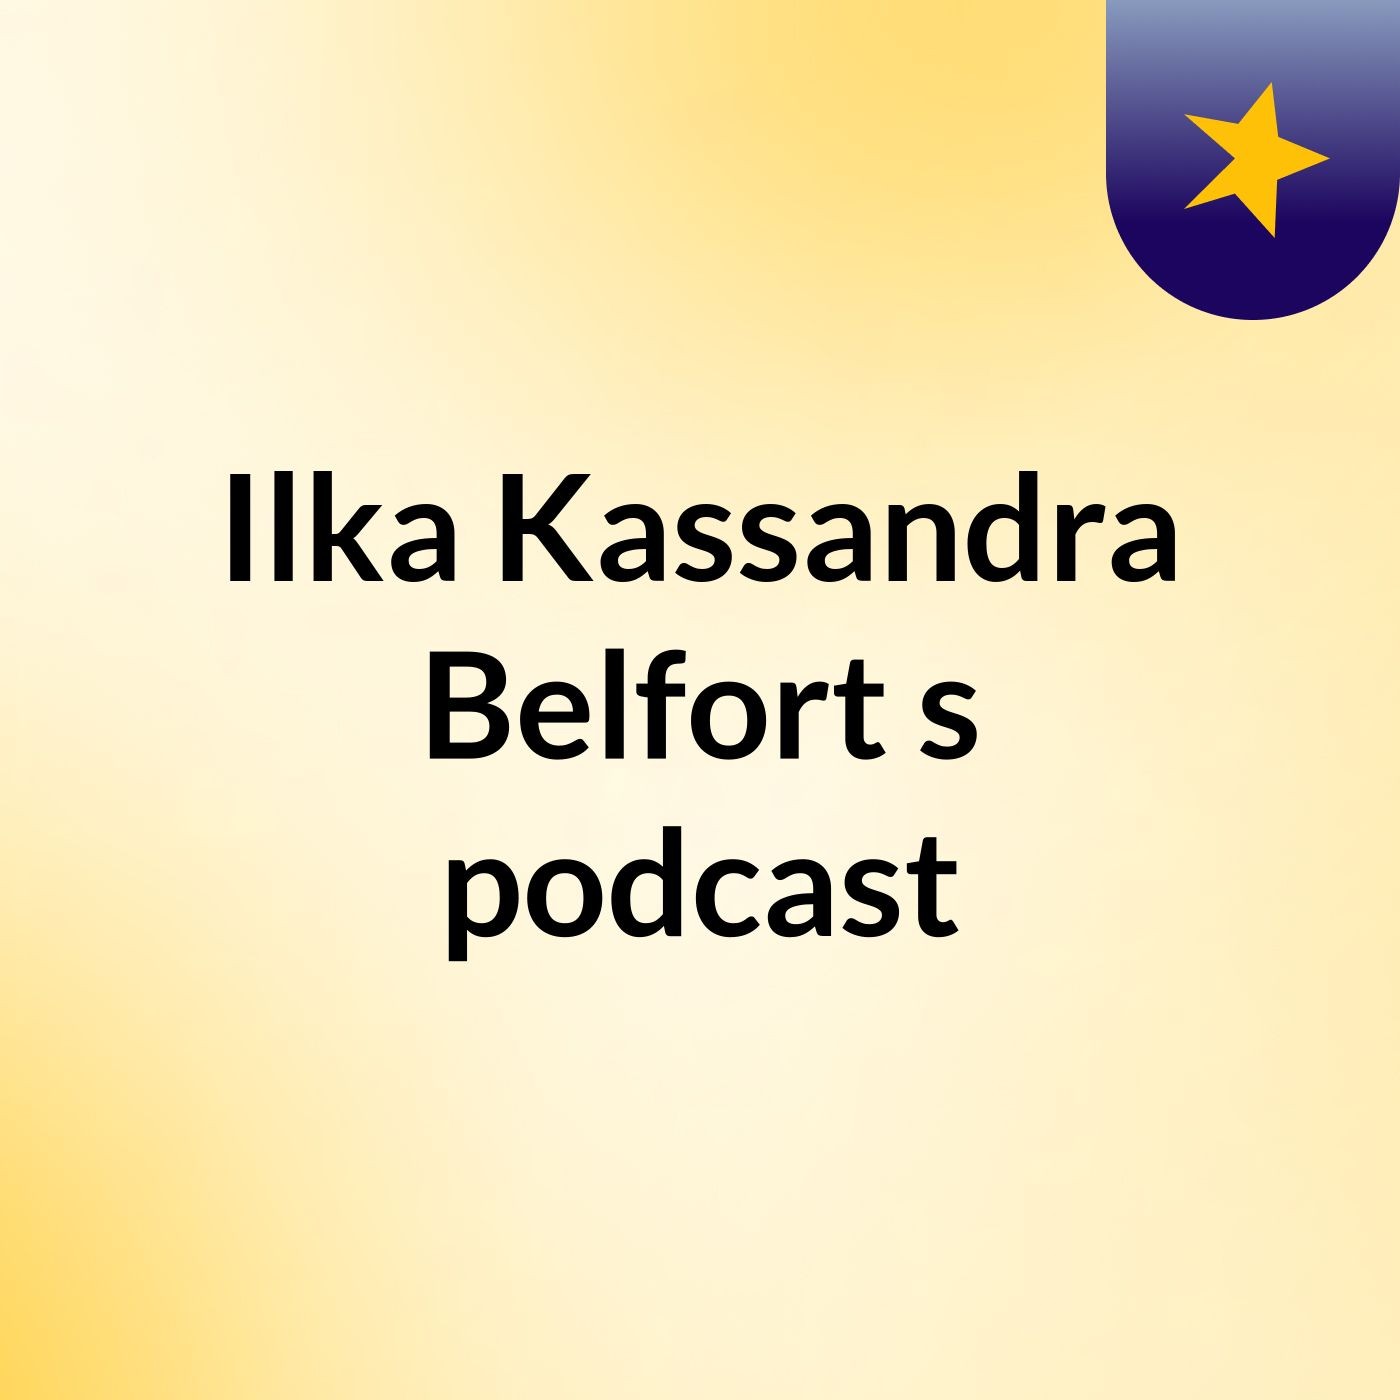 Ilka Kassandra Belfort's podcast